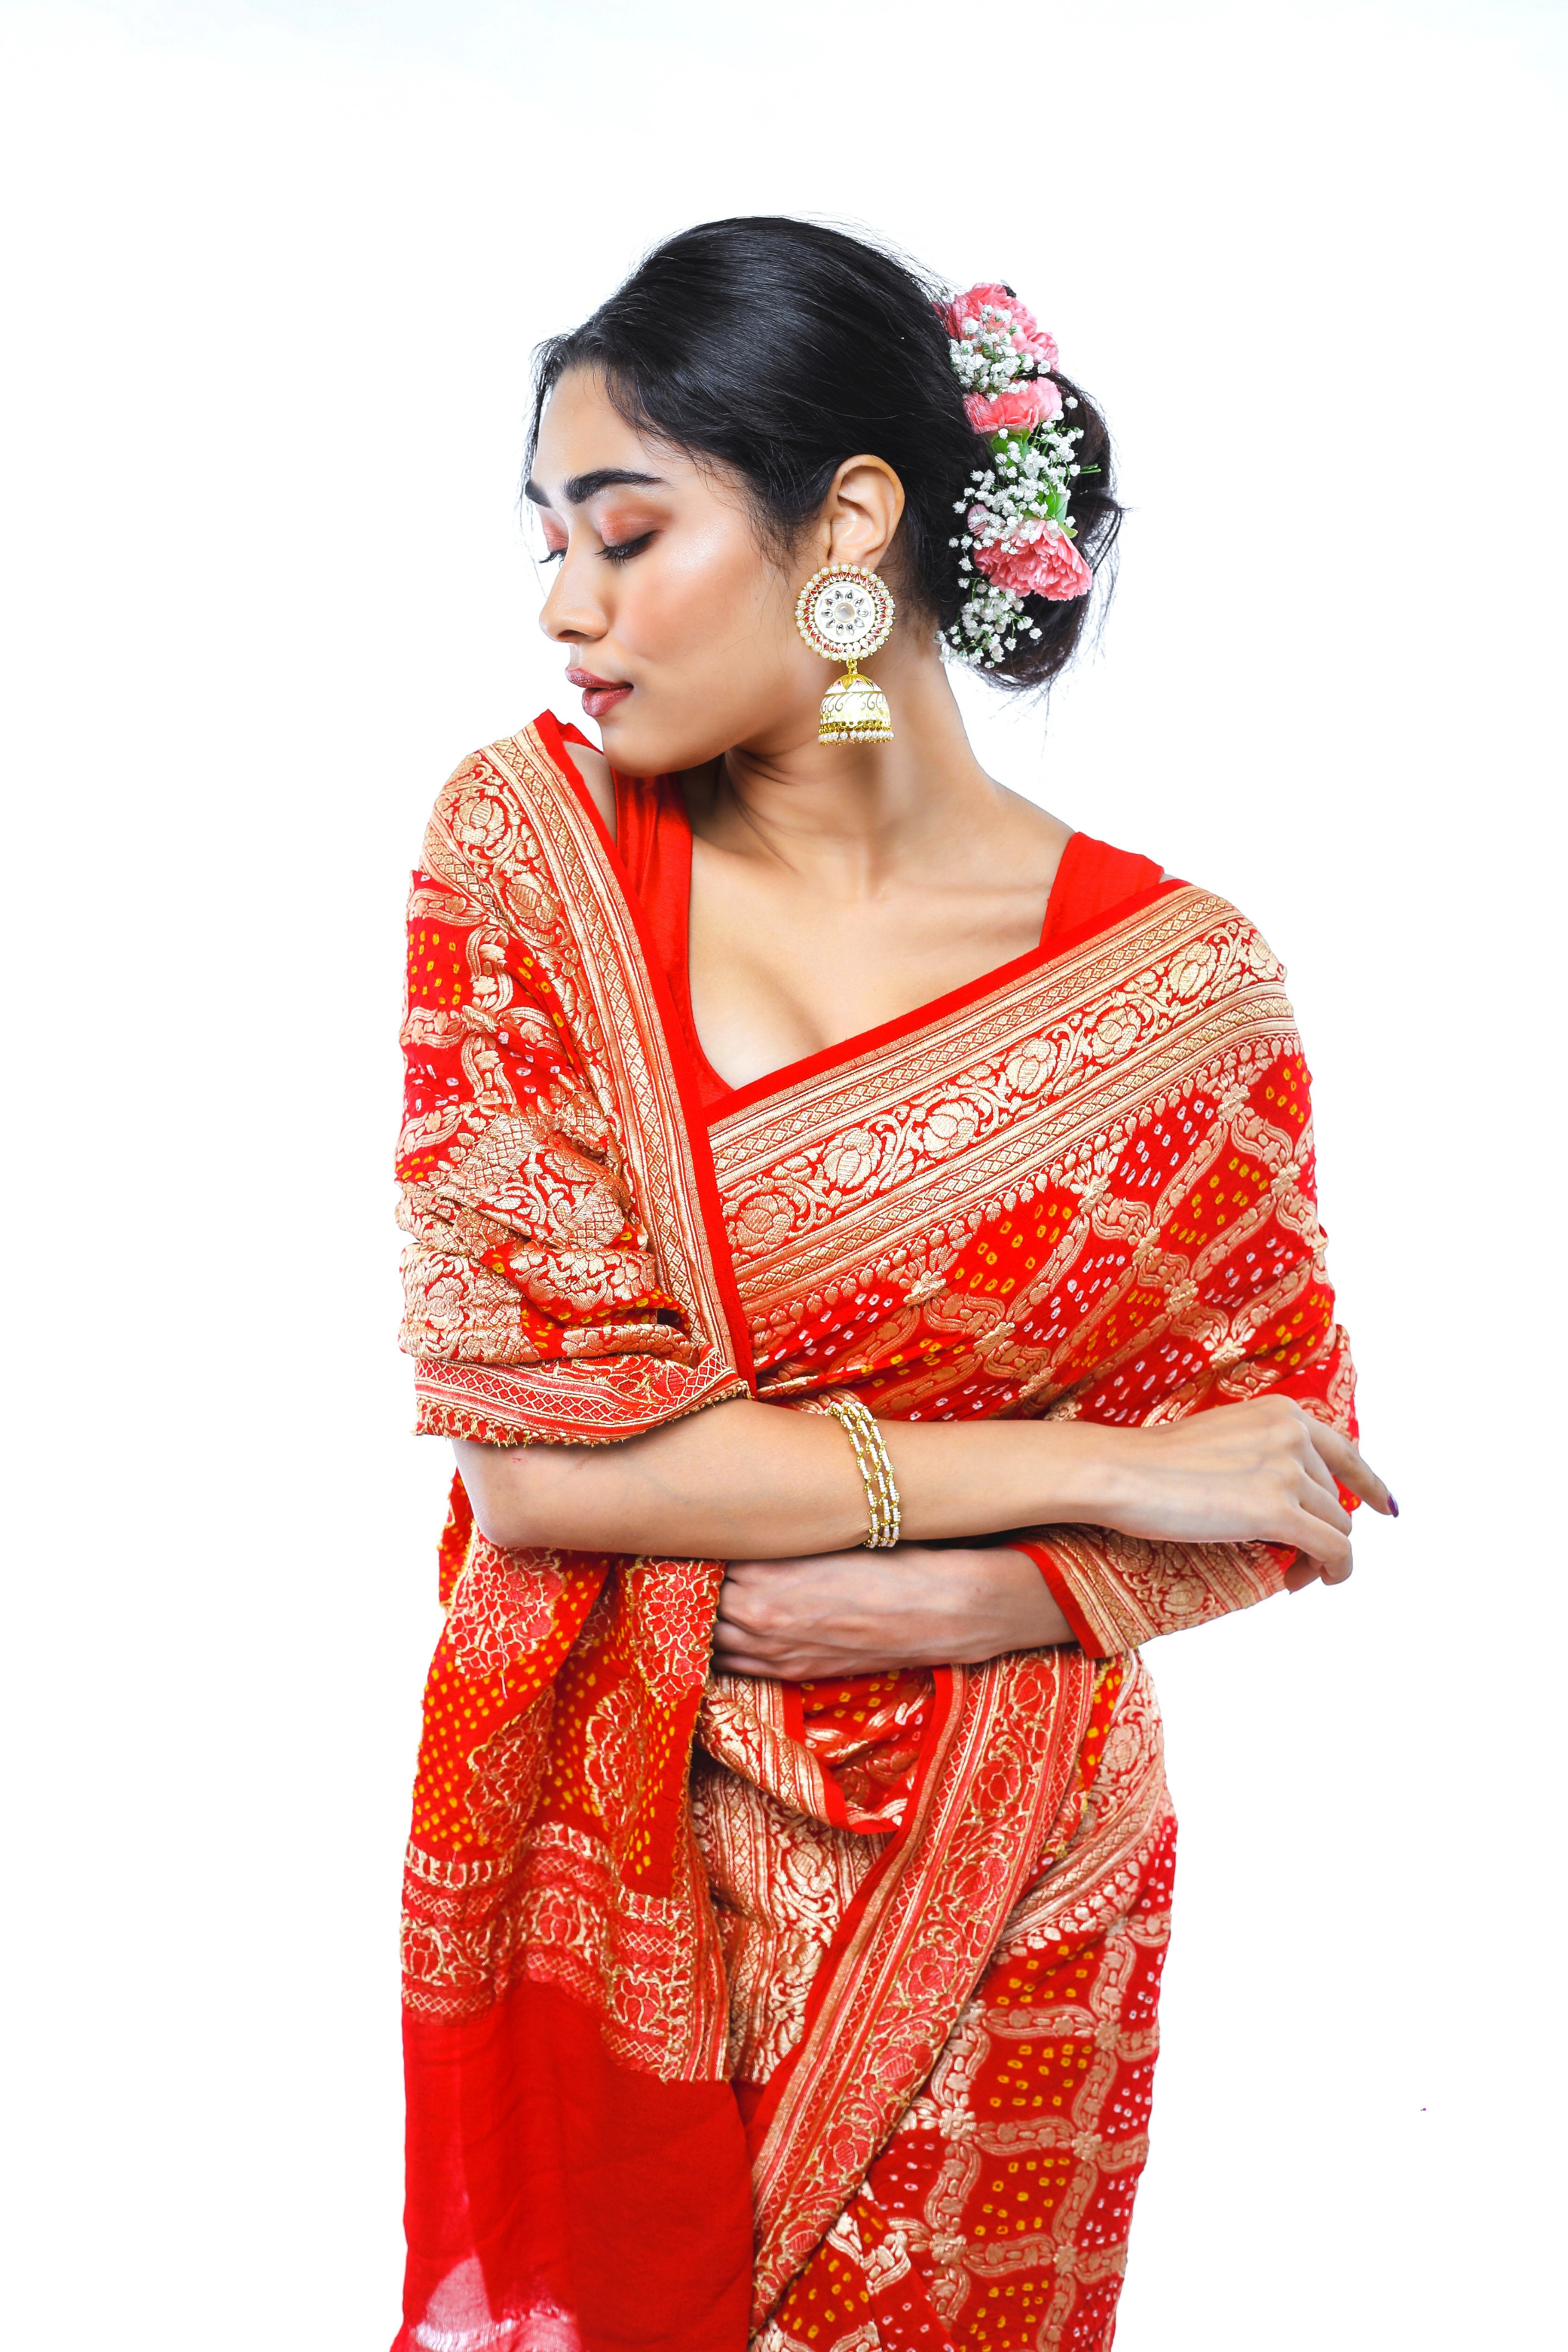 jamnagar saree in red color